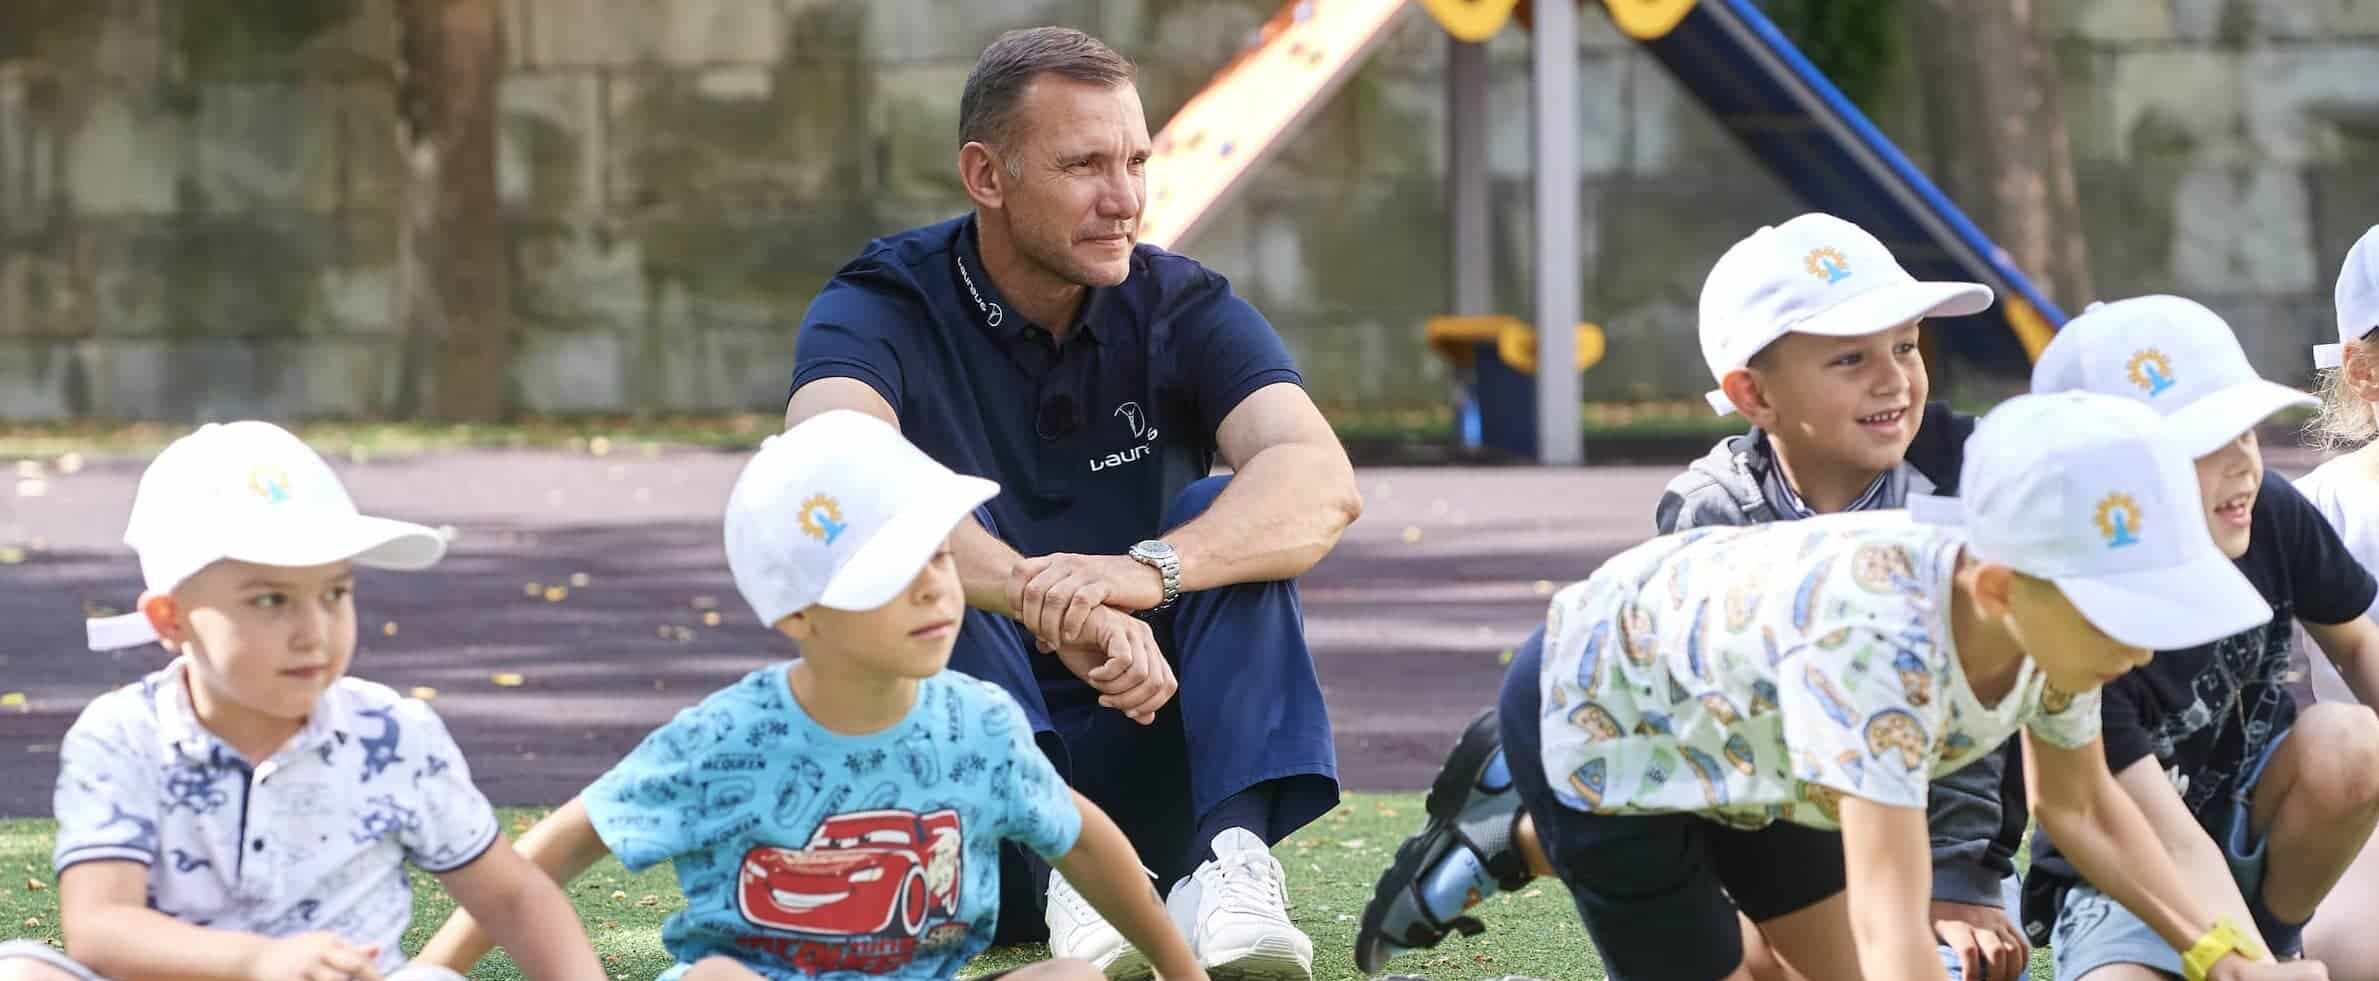 Andriy shevchenko makes emotional visit to refugee children